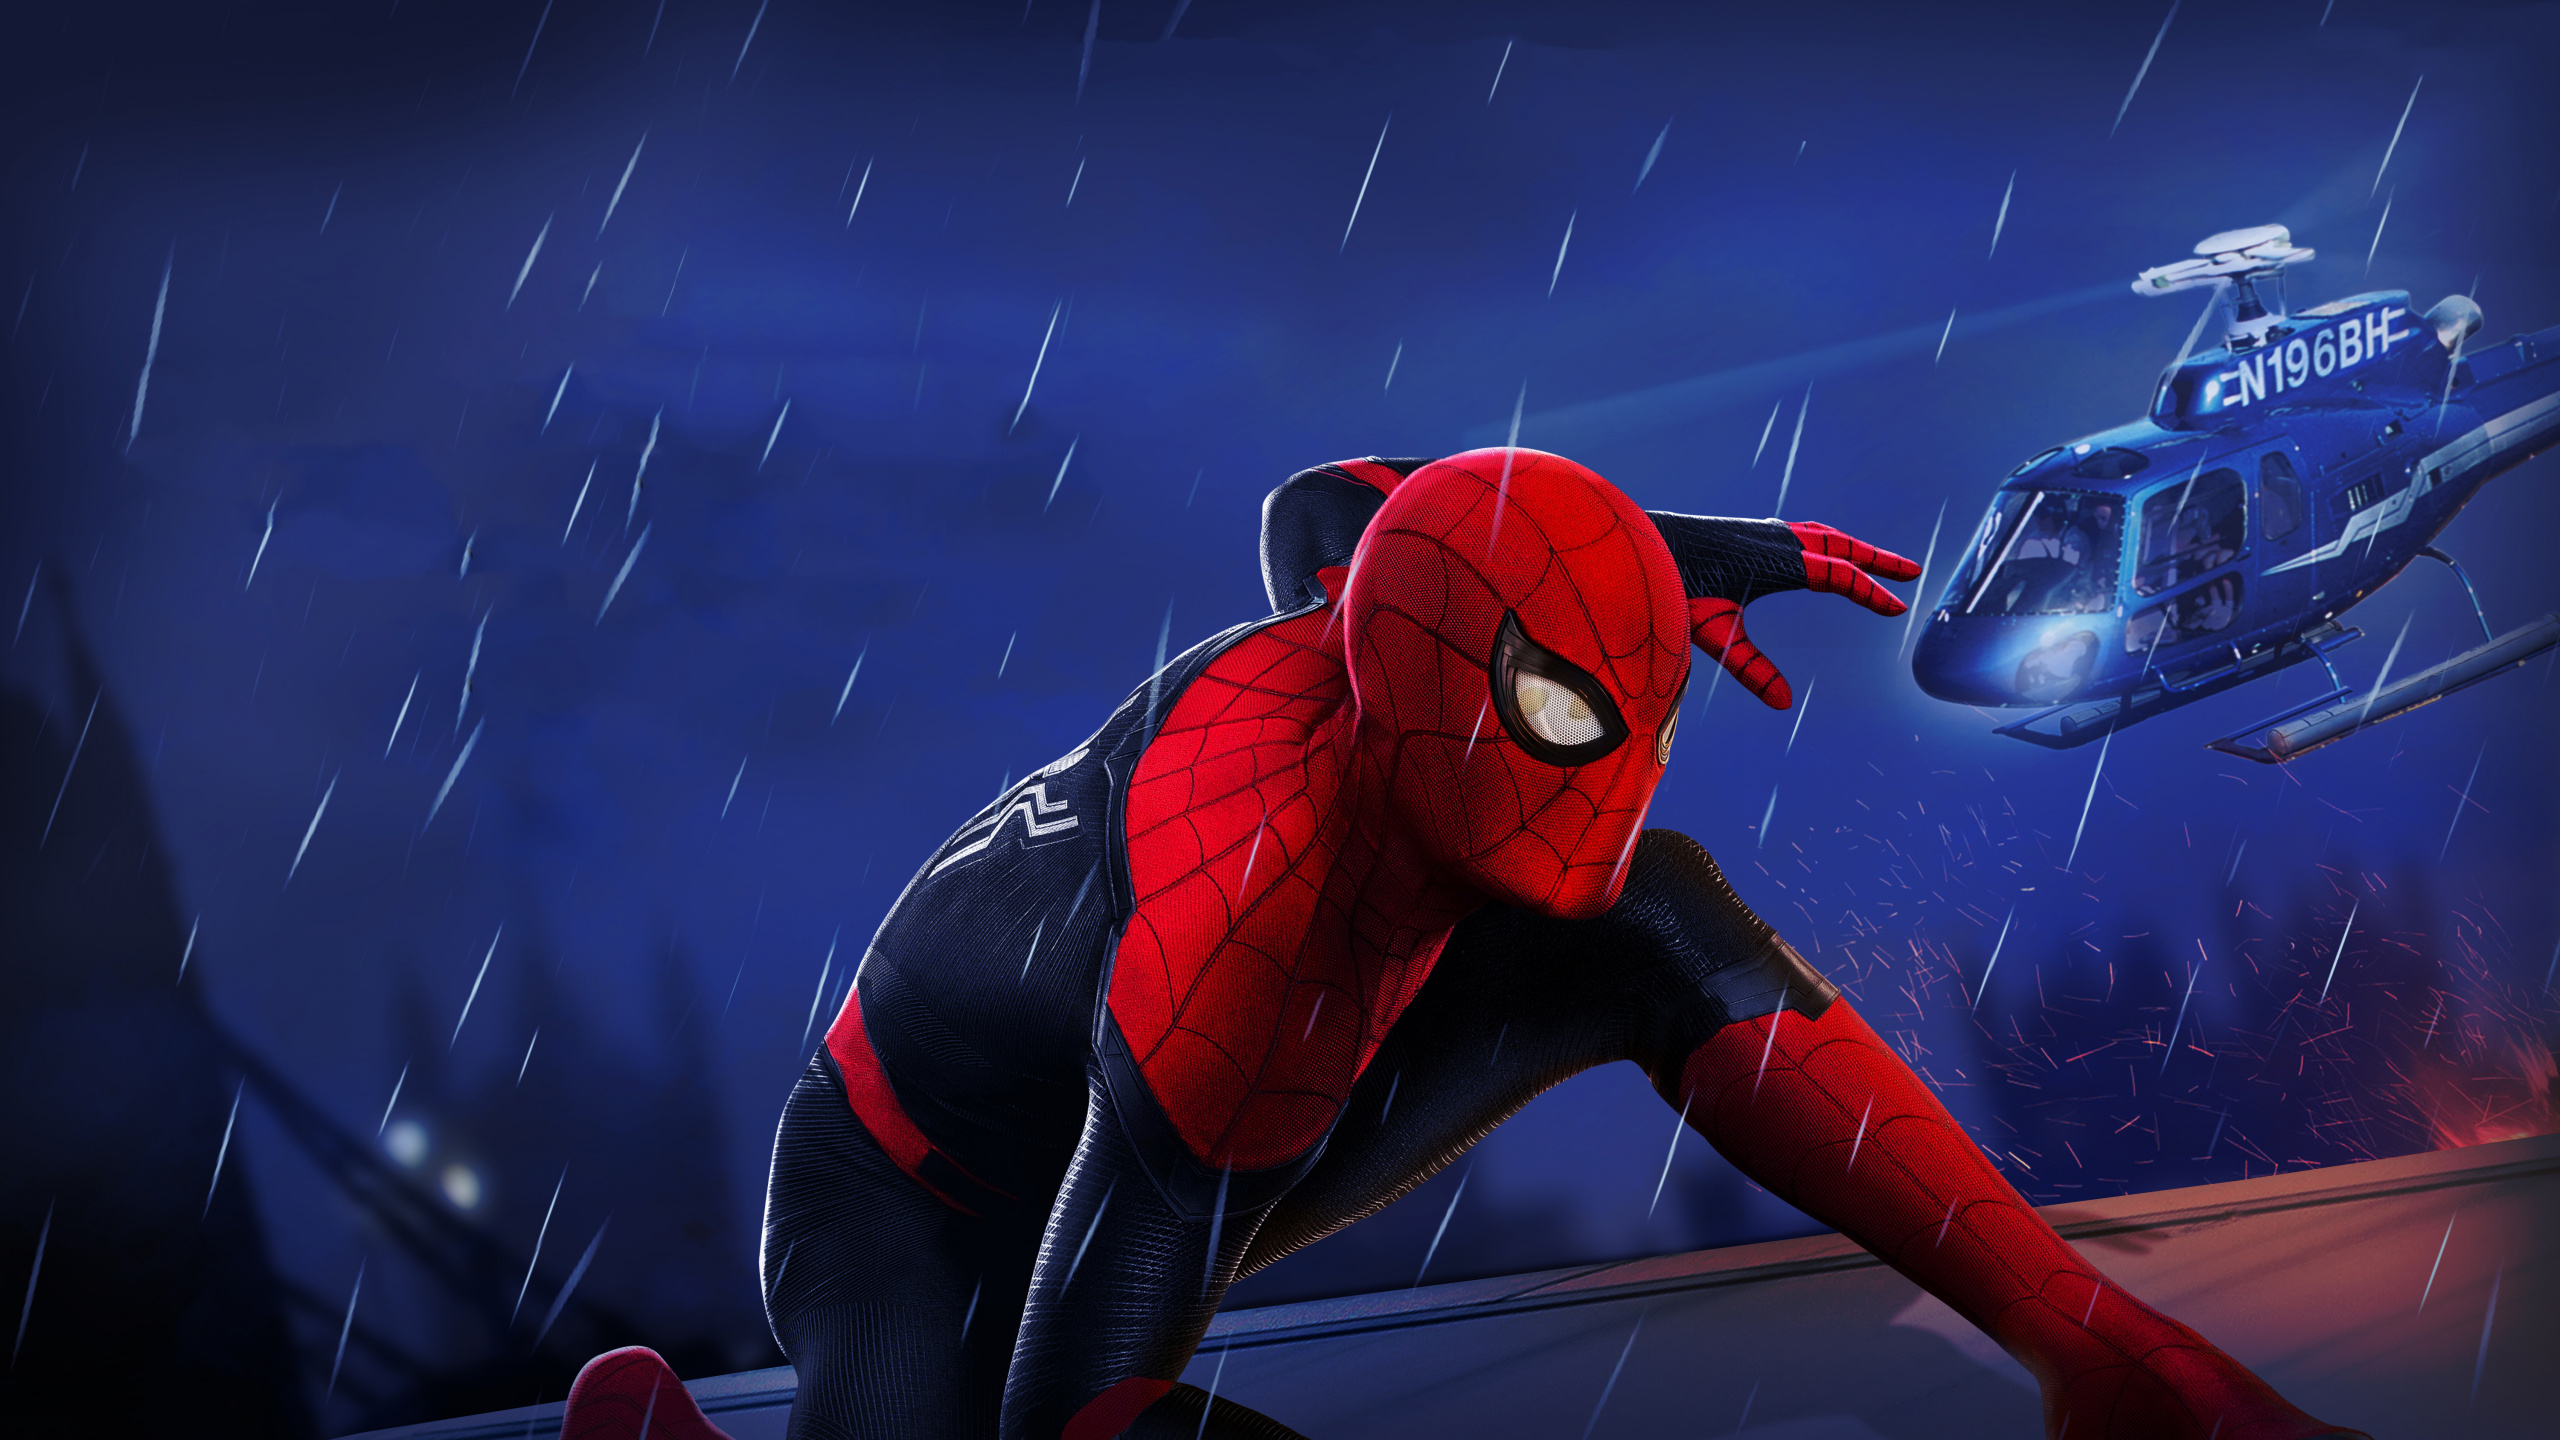 Spider-man, 蜘蛛侠回家, 致幻客, 超级英雄, Marvel 壁纸 2560x1440 允许